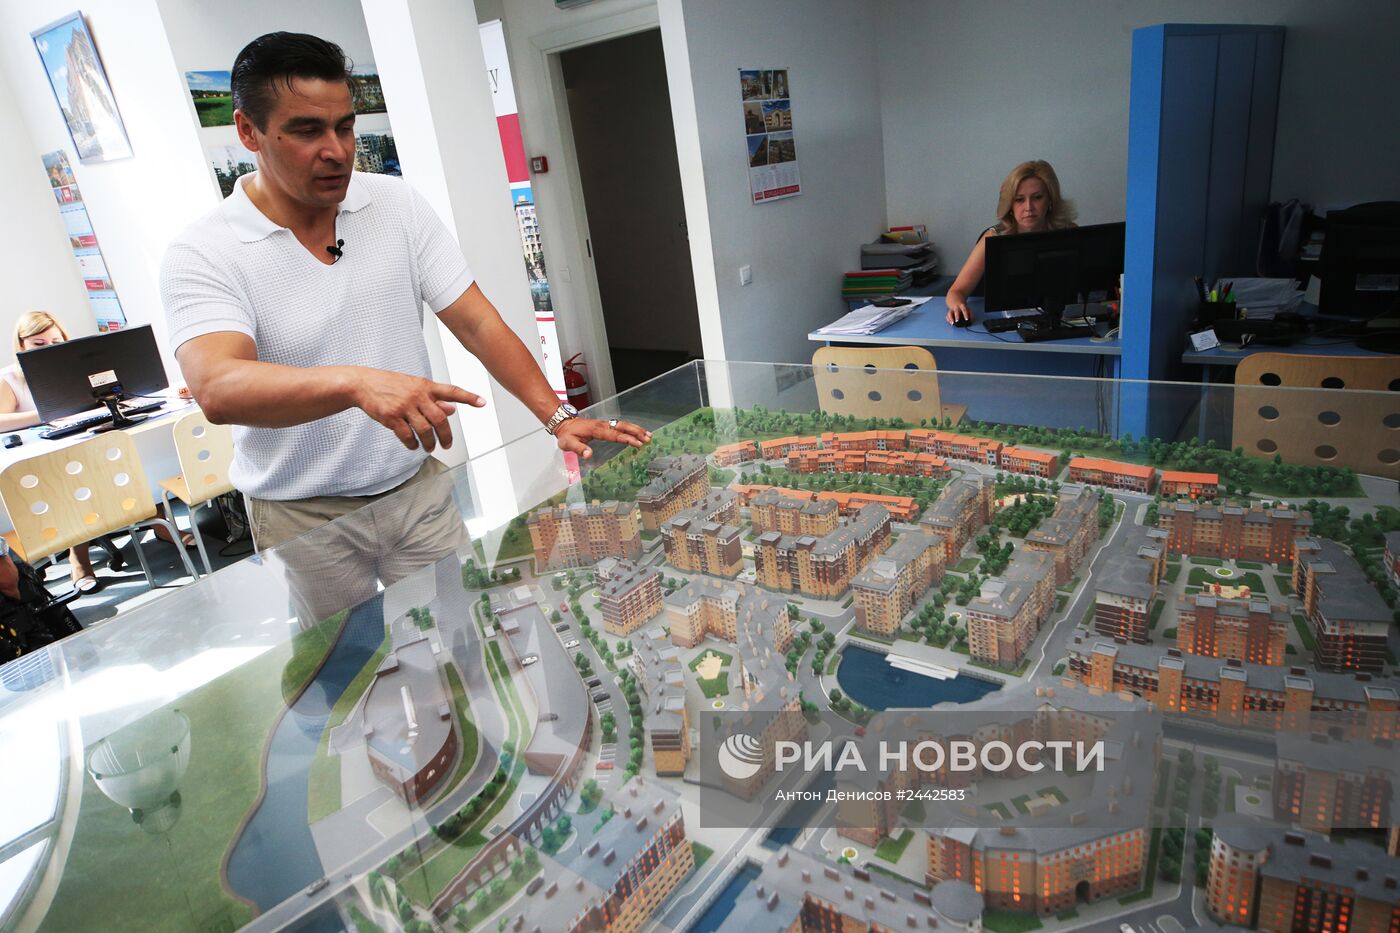 Саночник Альберт Демченко показал журналистам подаренную квартиру